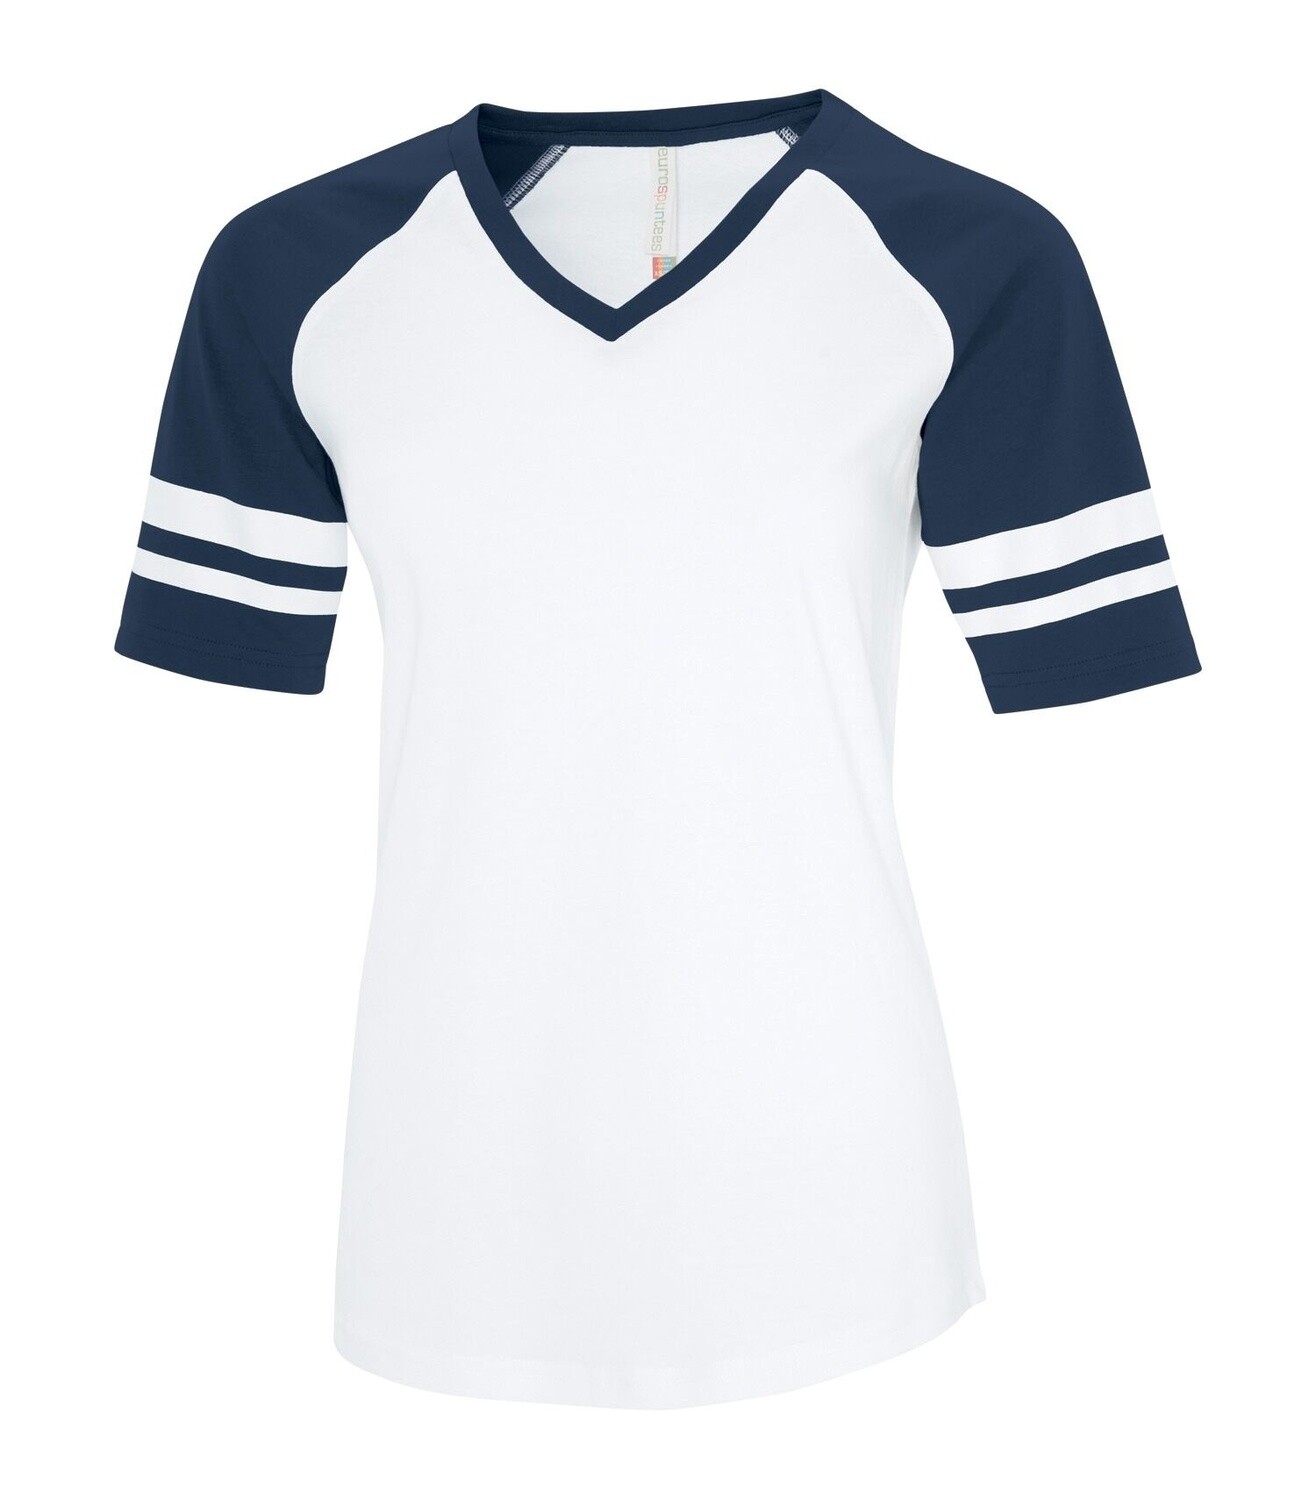 ATC Euro Spun Ladies Baseball Tee, Size: XS, Colour: White / Navy